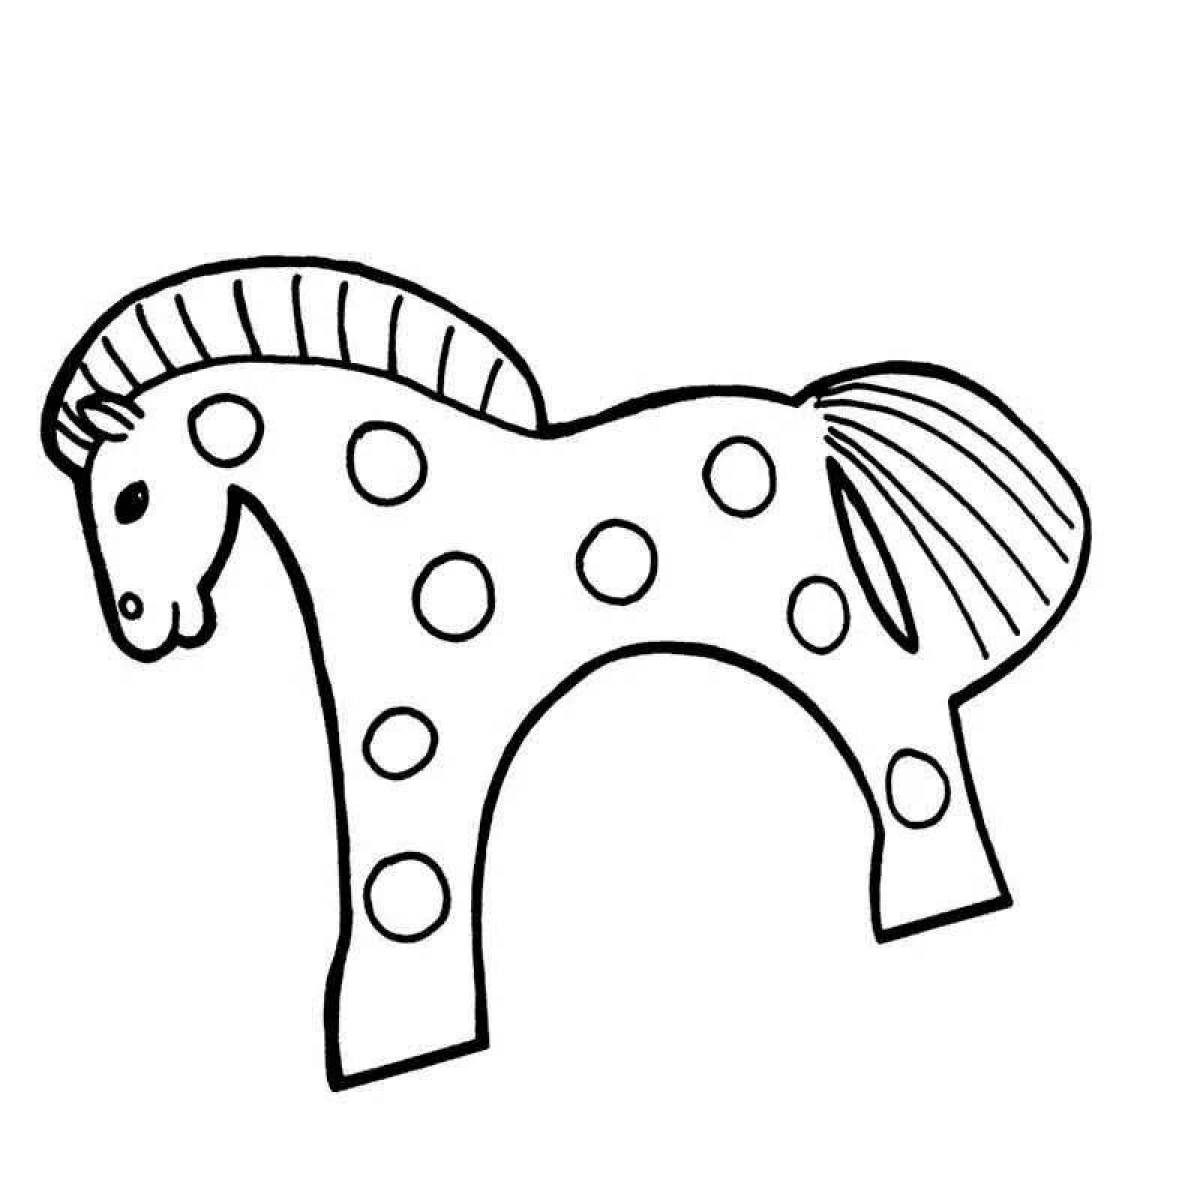 Дымковская игрушка лошадка контур